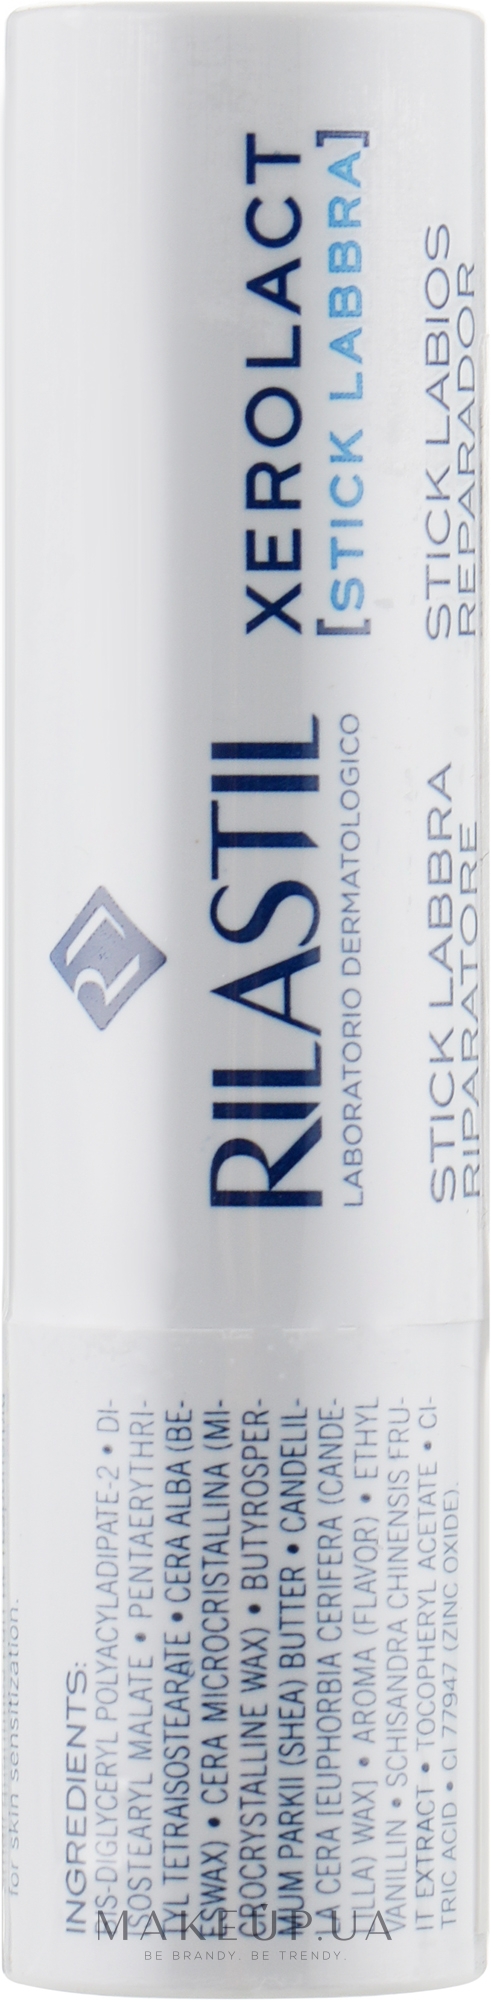 Восстанавливающая и защитная помада для губ - Rilastil Xerolact Stick Labbra Riparatore — фото 4.8g